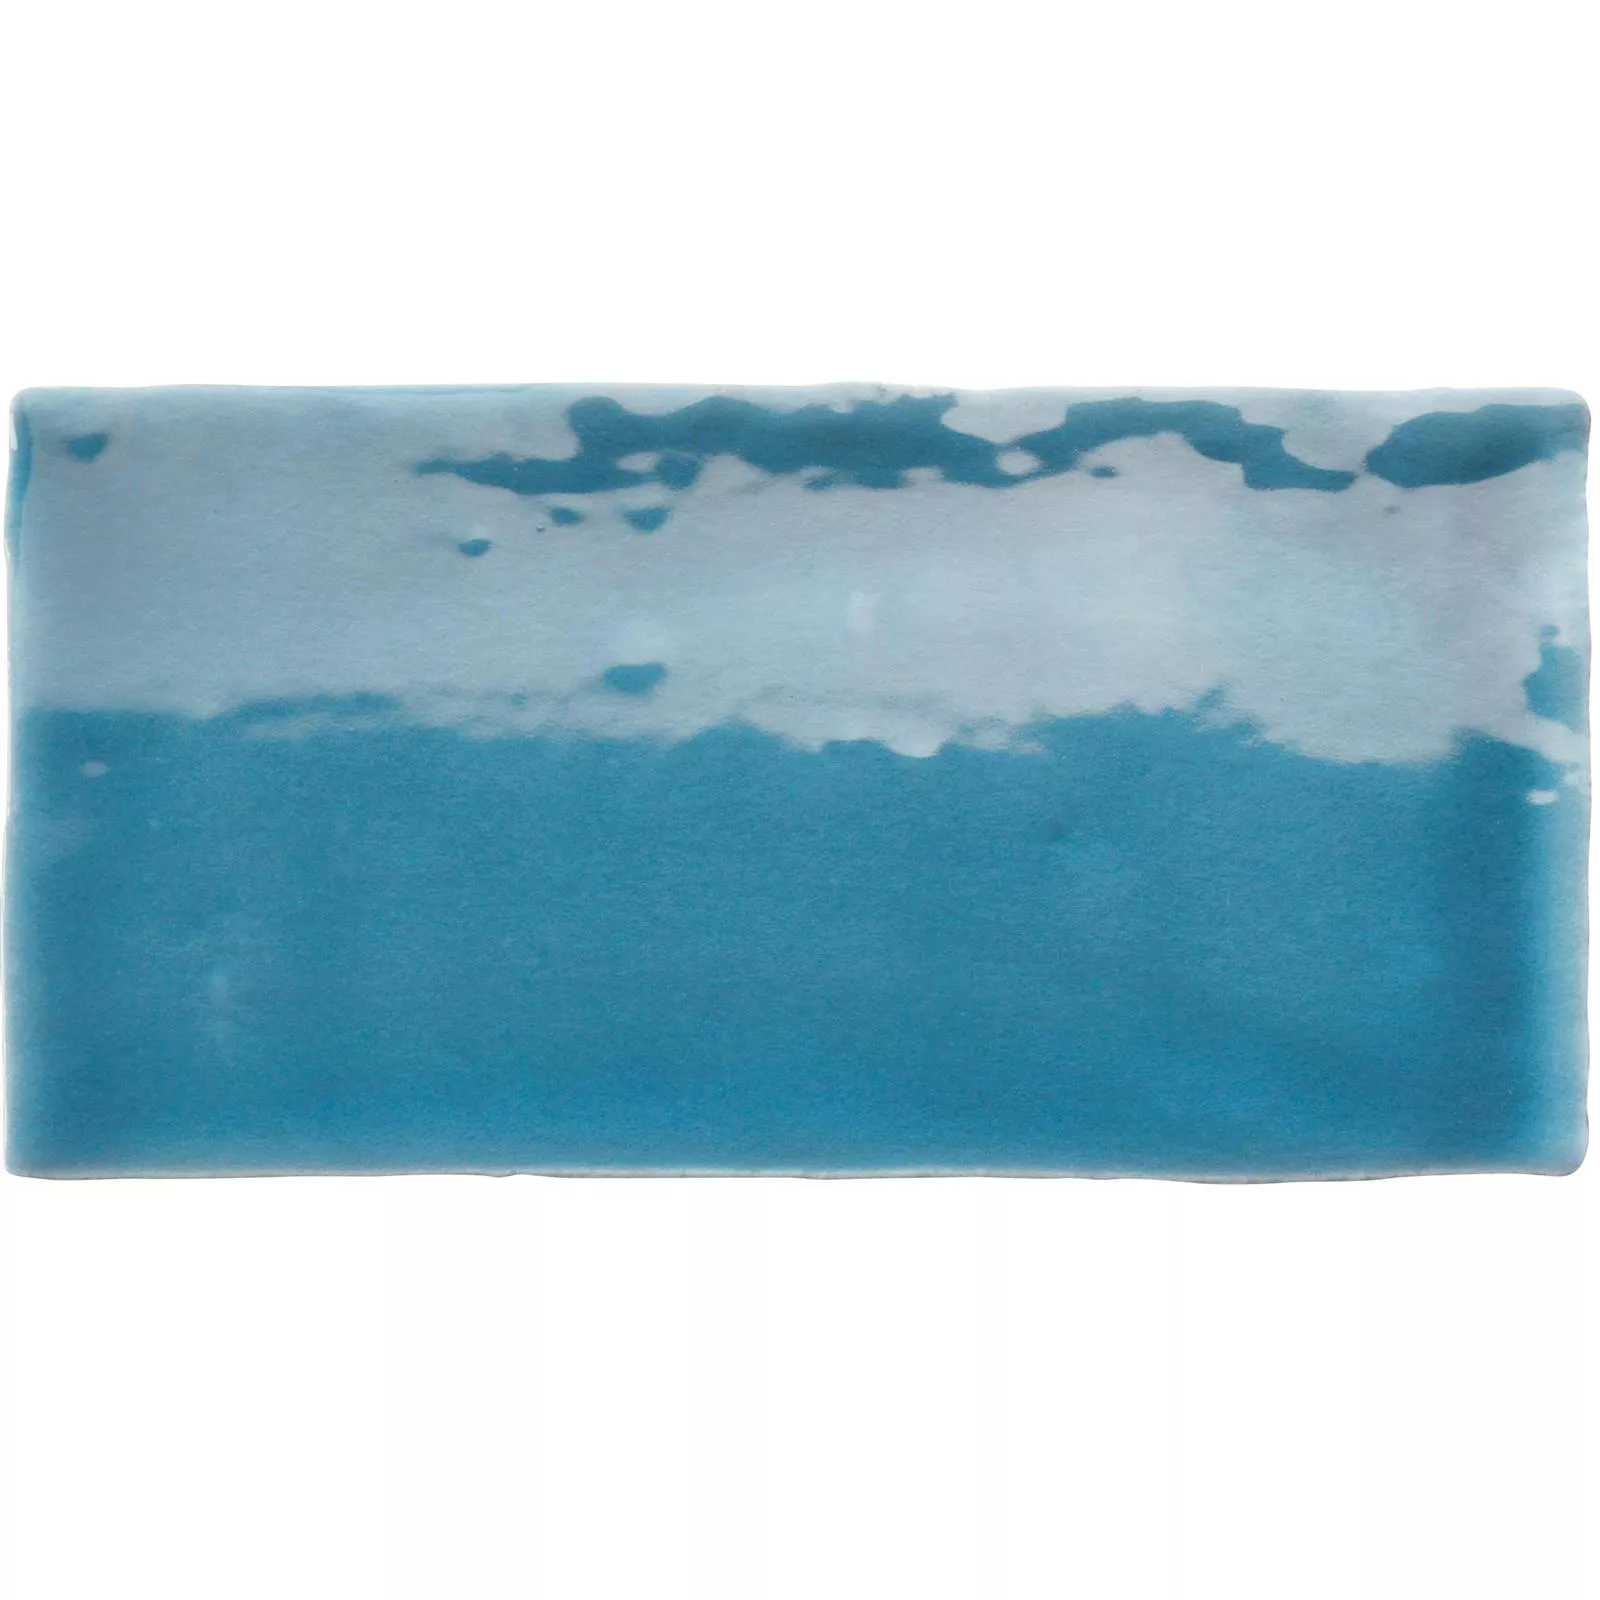 Azulejo Algier Feito à Mão 7,5x15cm Mar Azul